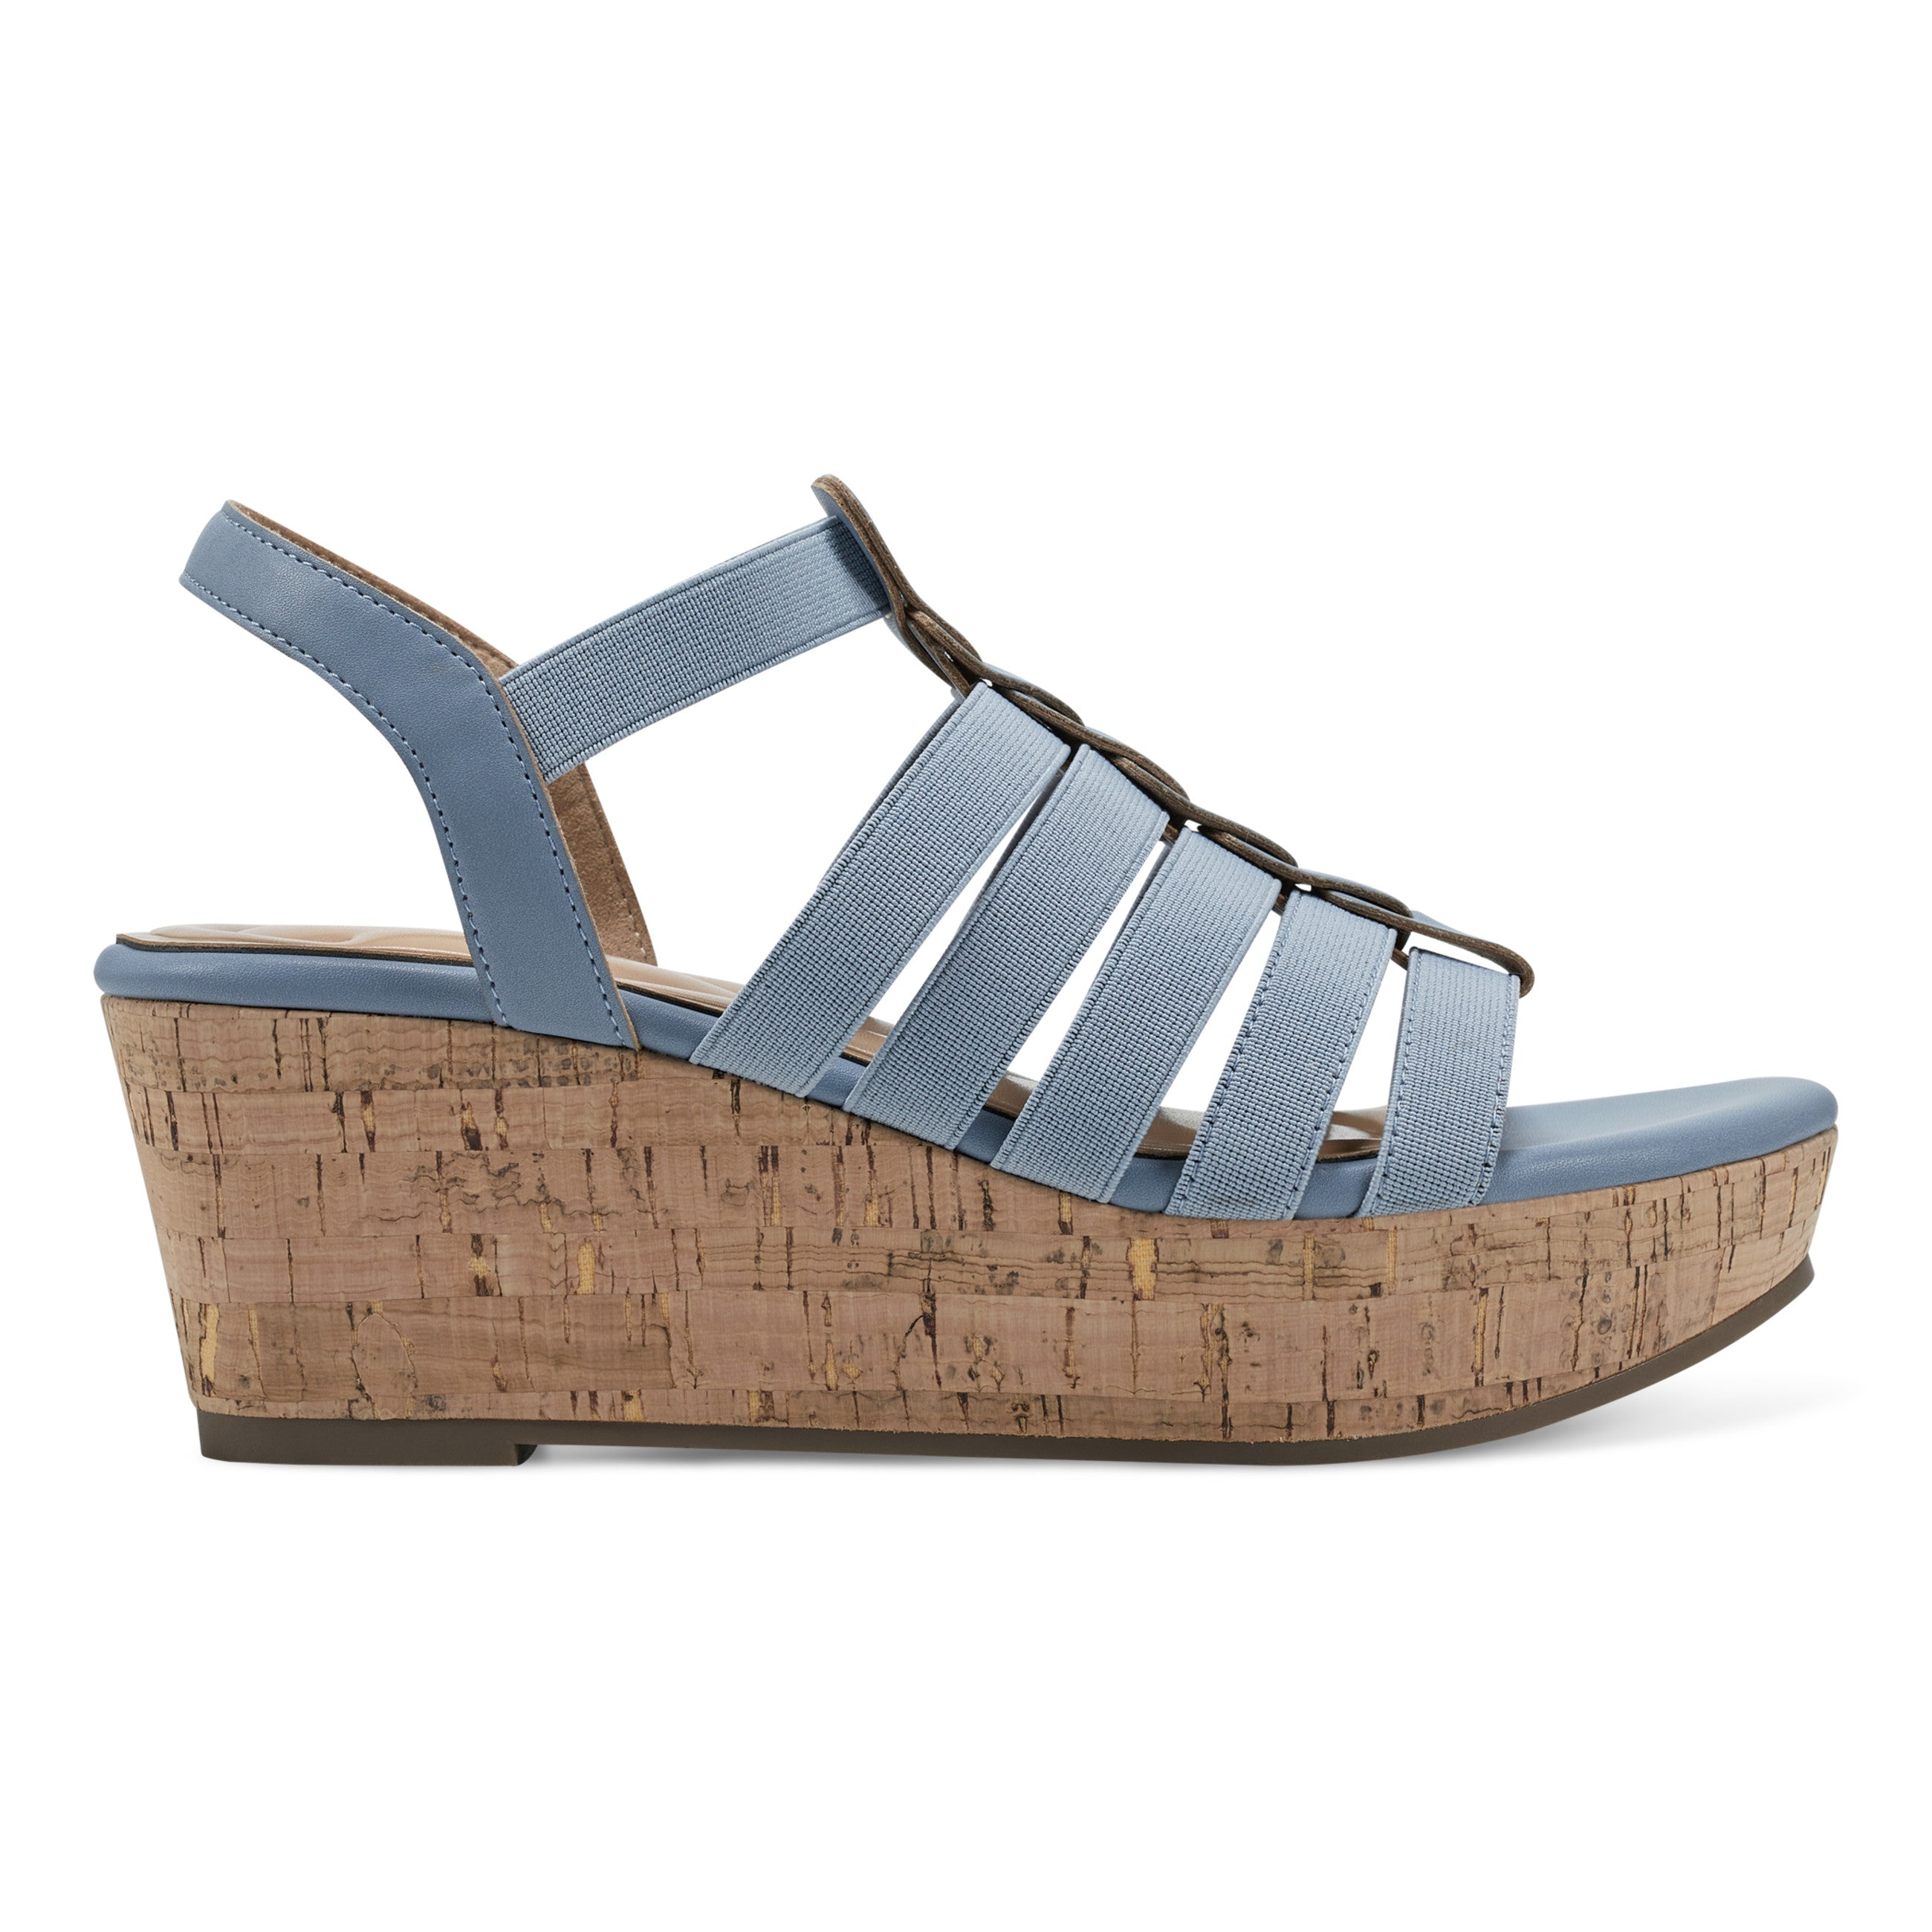 Avinna Platform Wedge Sandals